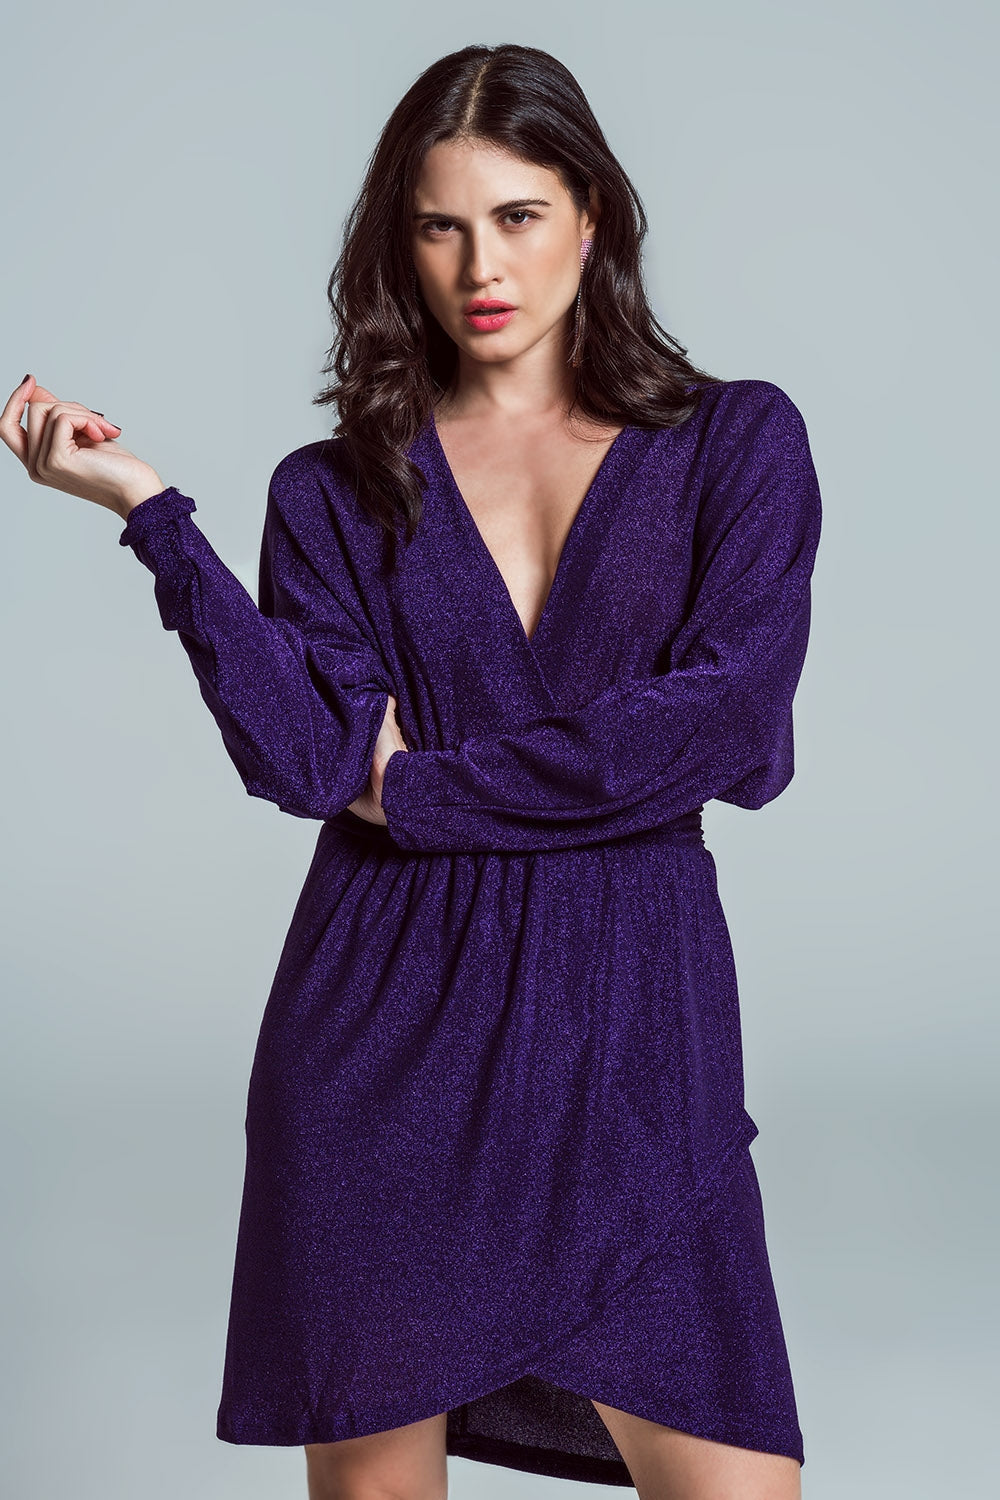 TEEK - Purple Glitter Deep V-Neck Dress DRESS TEEK M   